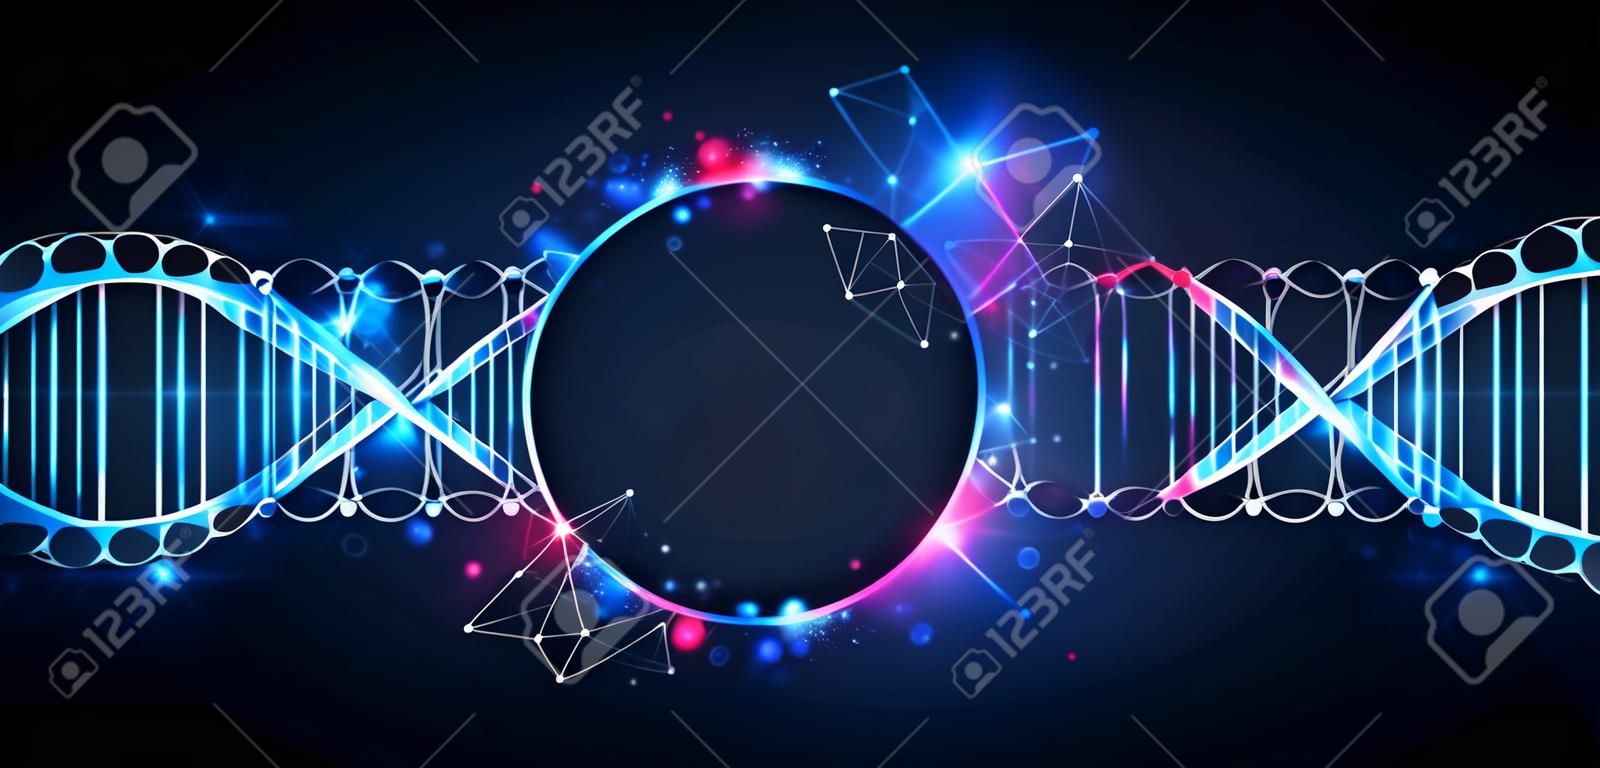 Szablon Nauka, tapety lub transparentu z cząsteczek DNA. ilustracji wektorowych.